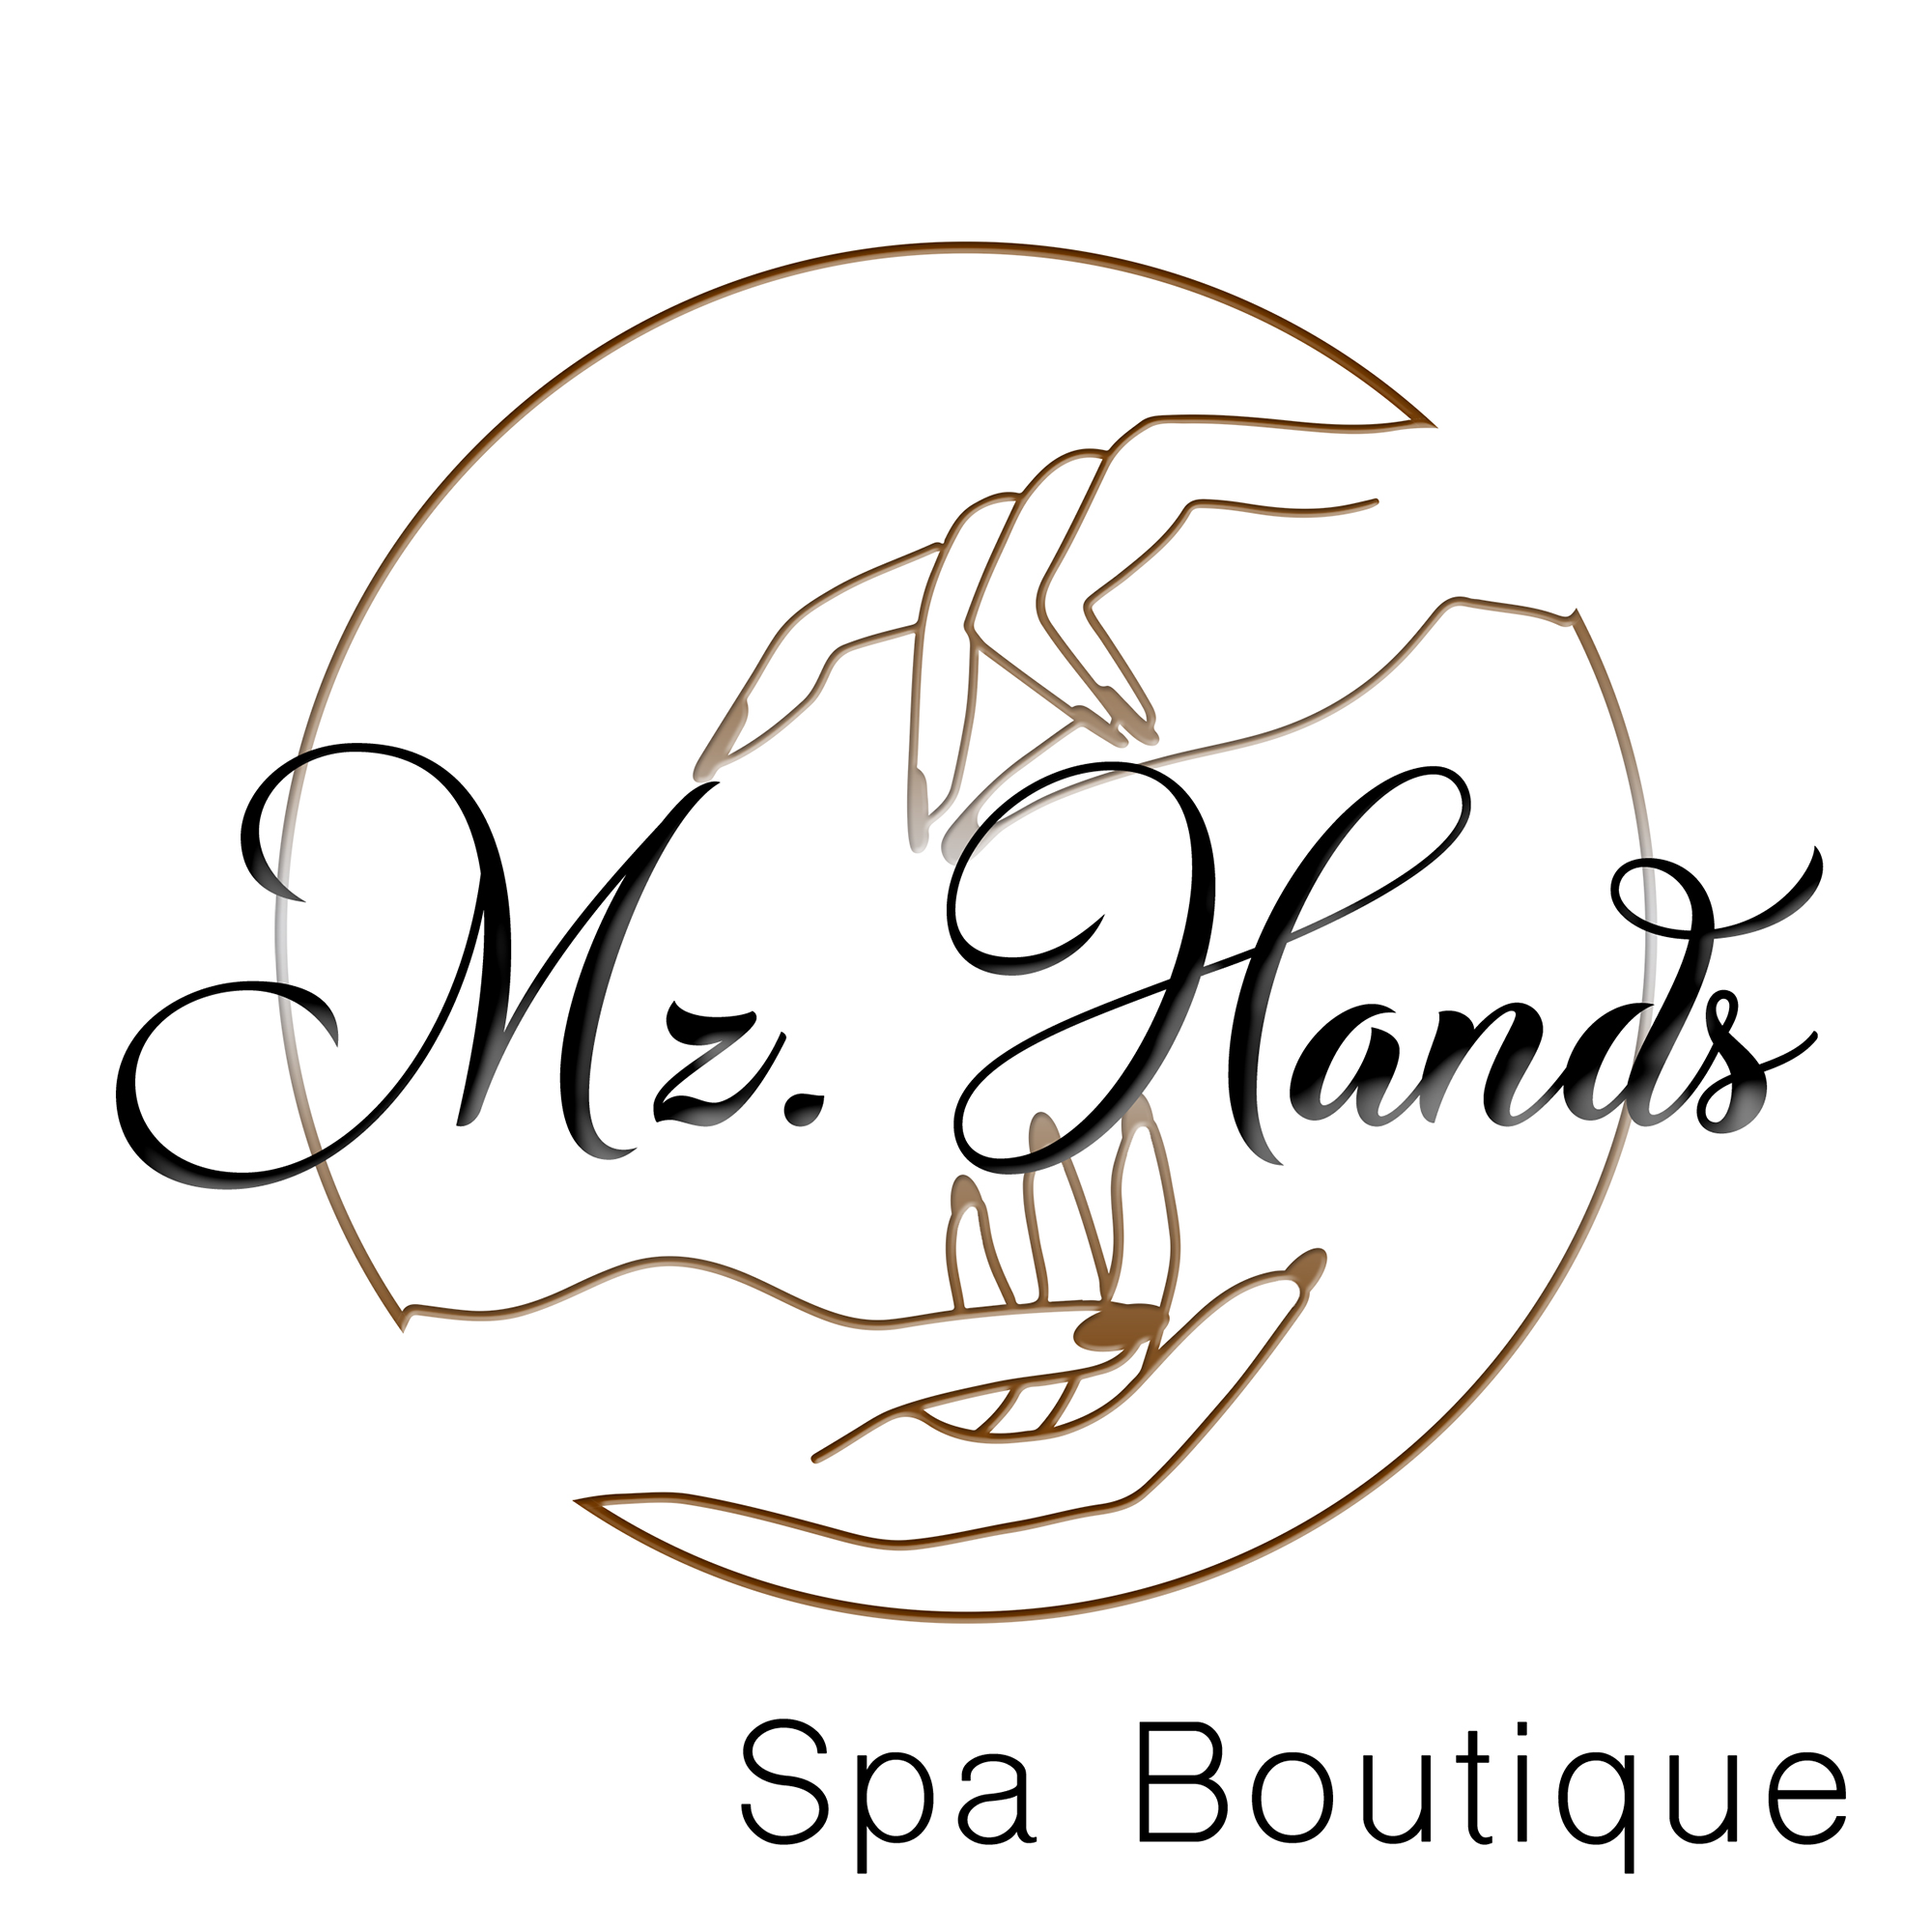 Mz. Hands Spa Boutique